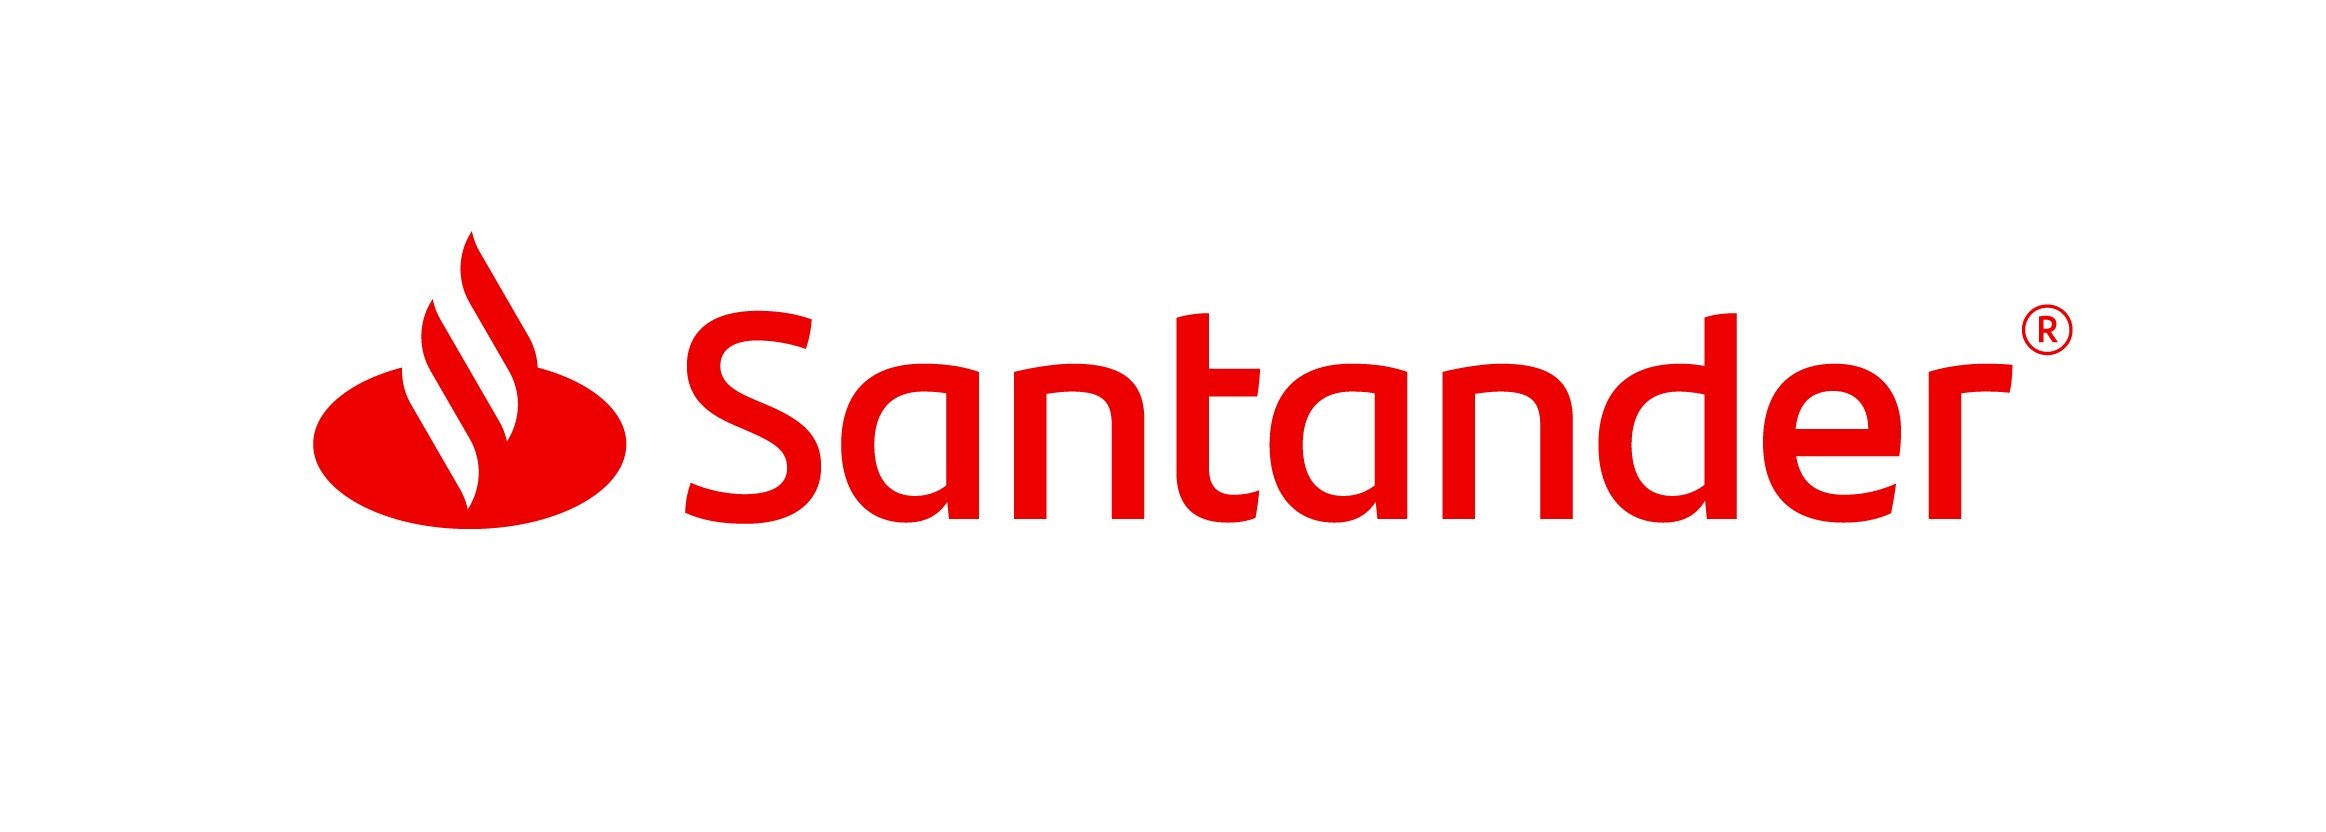 Santander Logo final.jpg